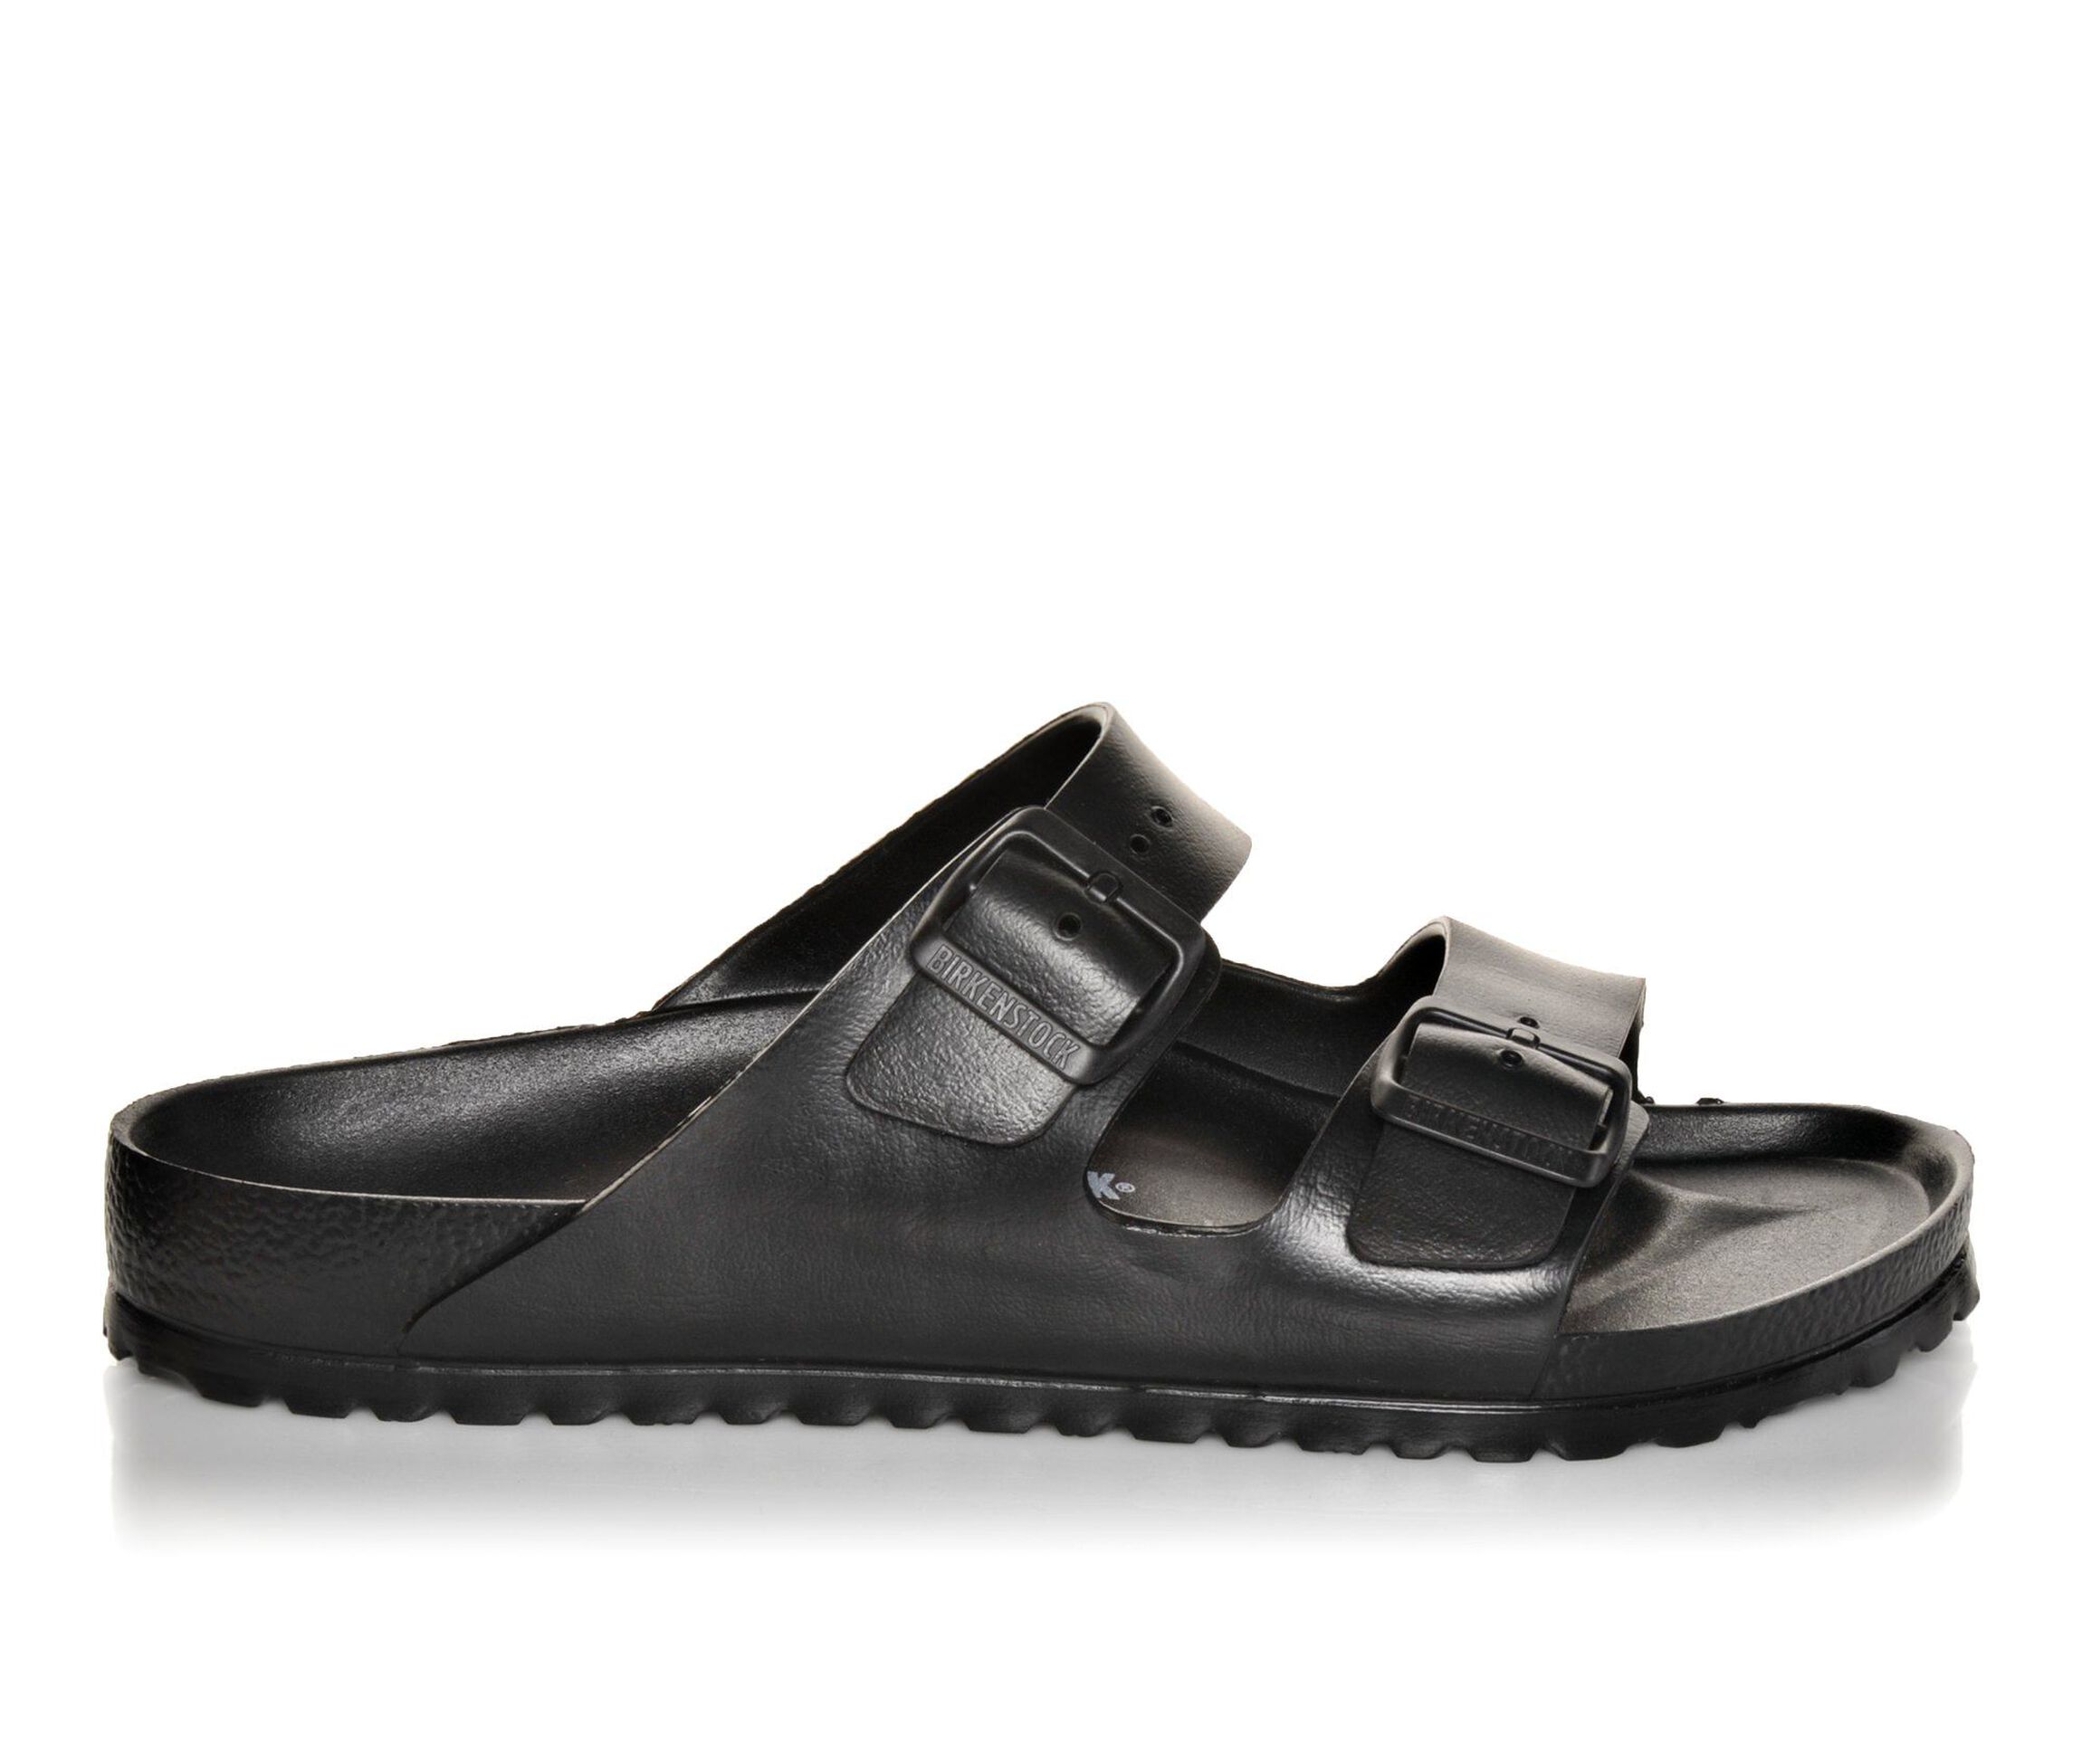 Birkenstock Sandals & Clogs for Men | Shoe Carnival